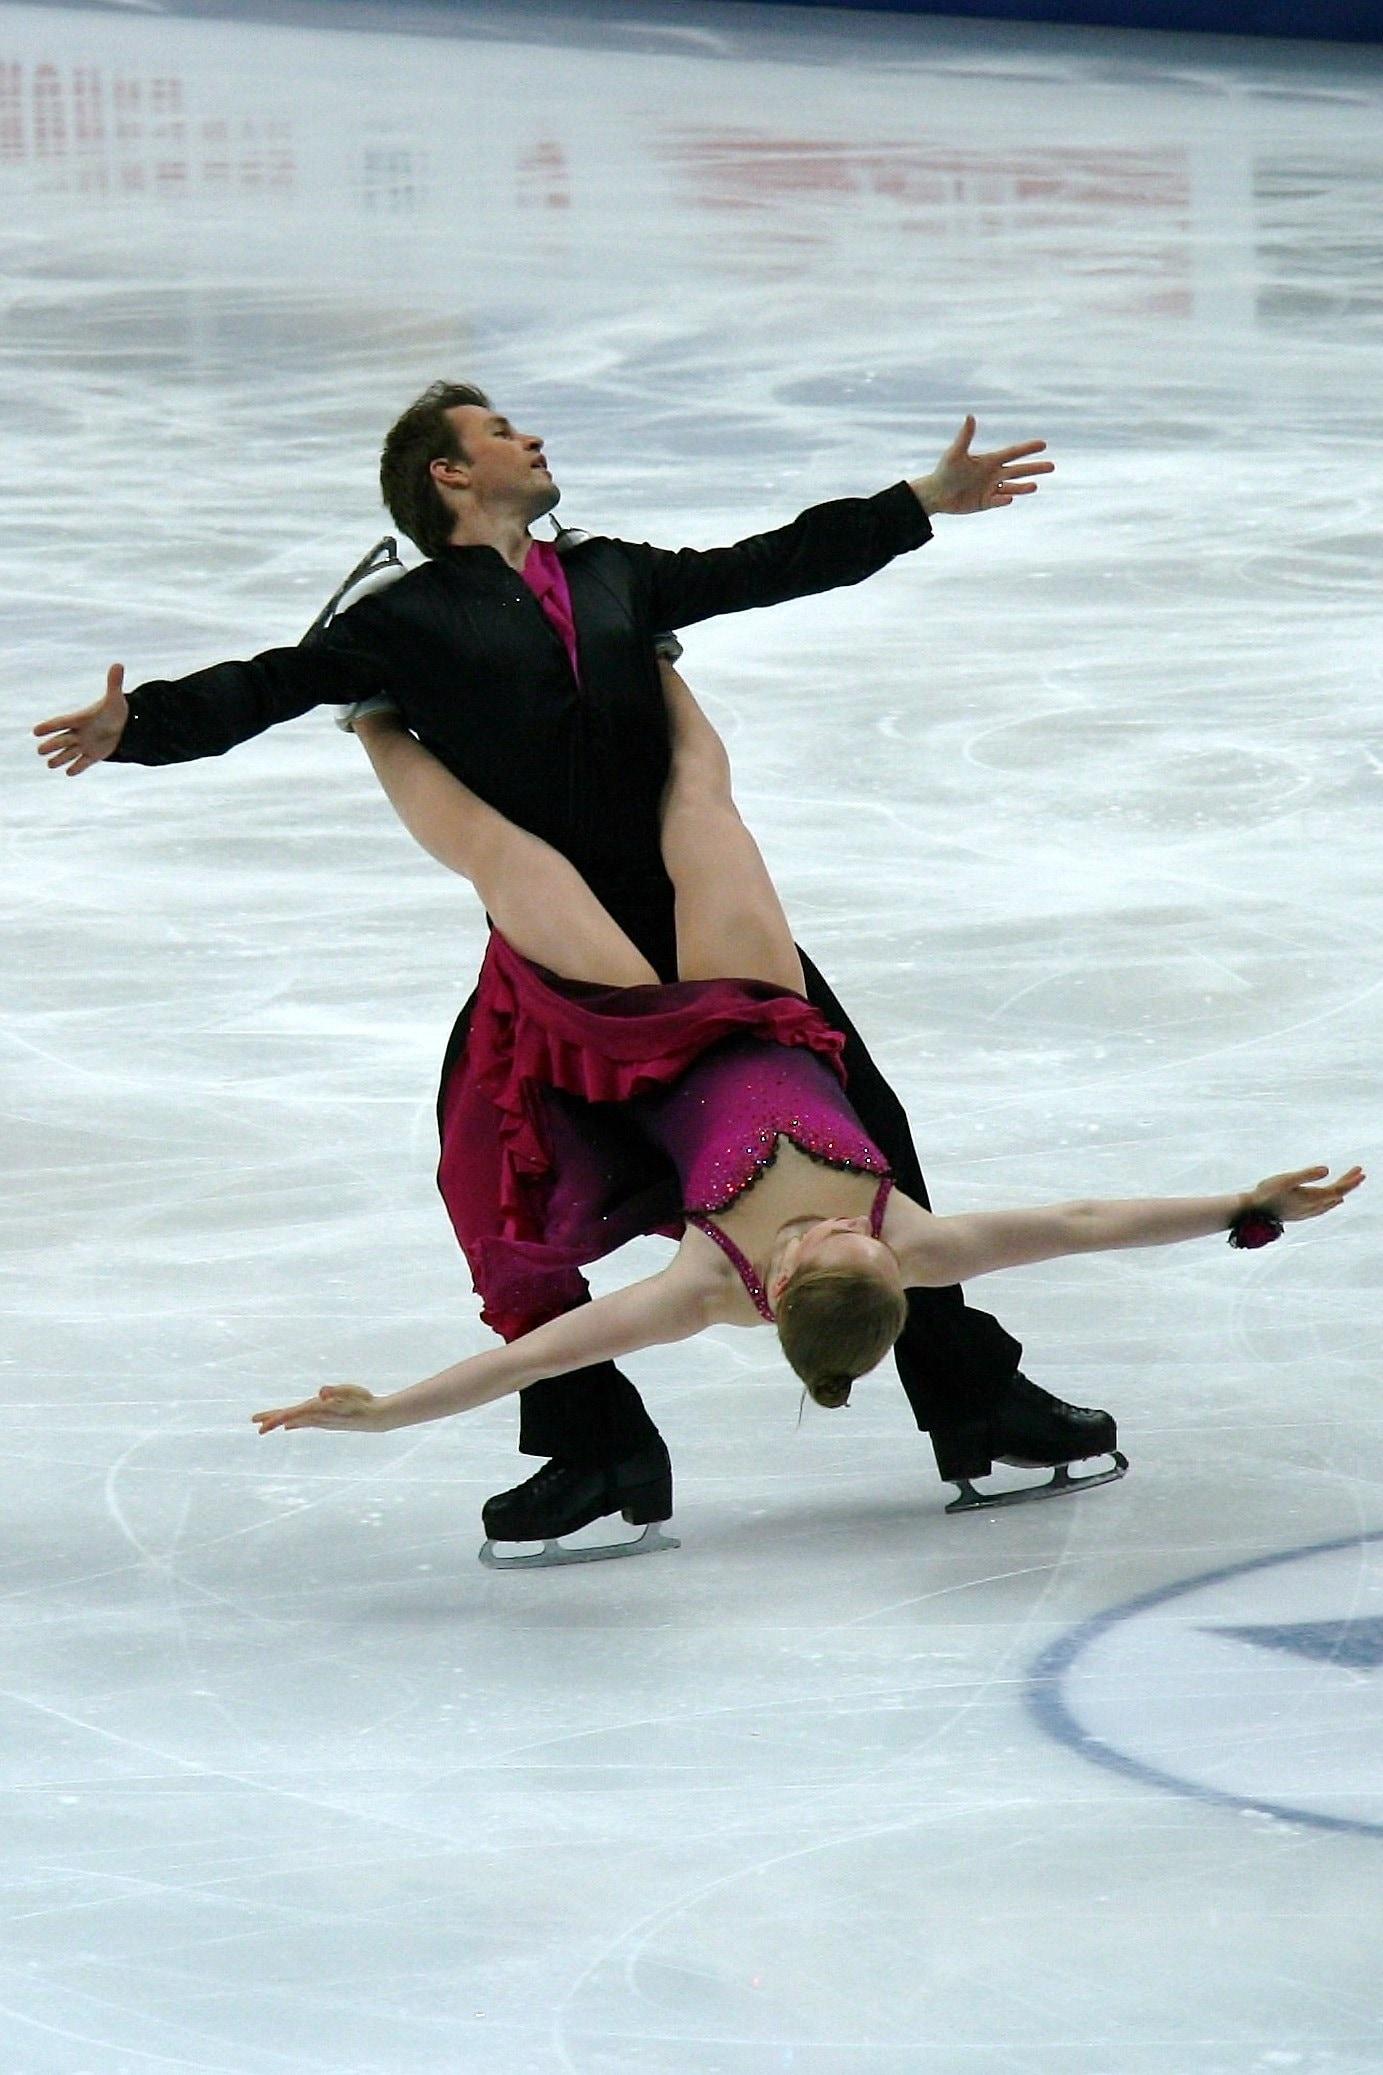 ice skating photography free image